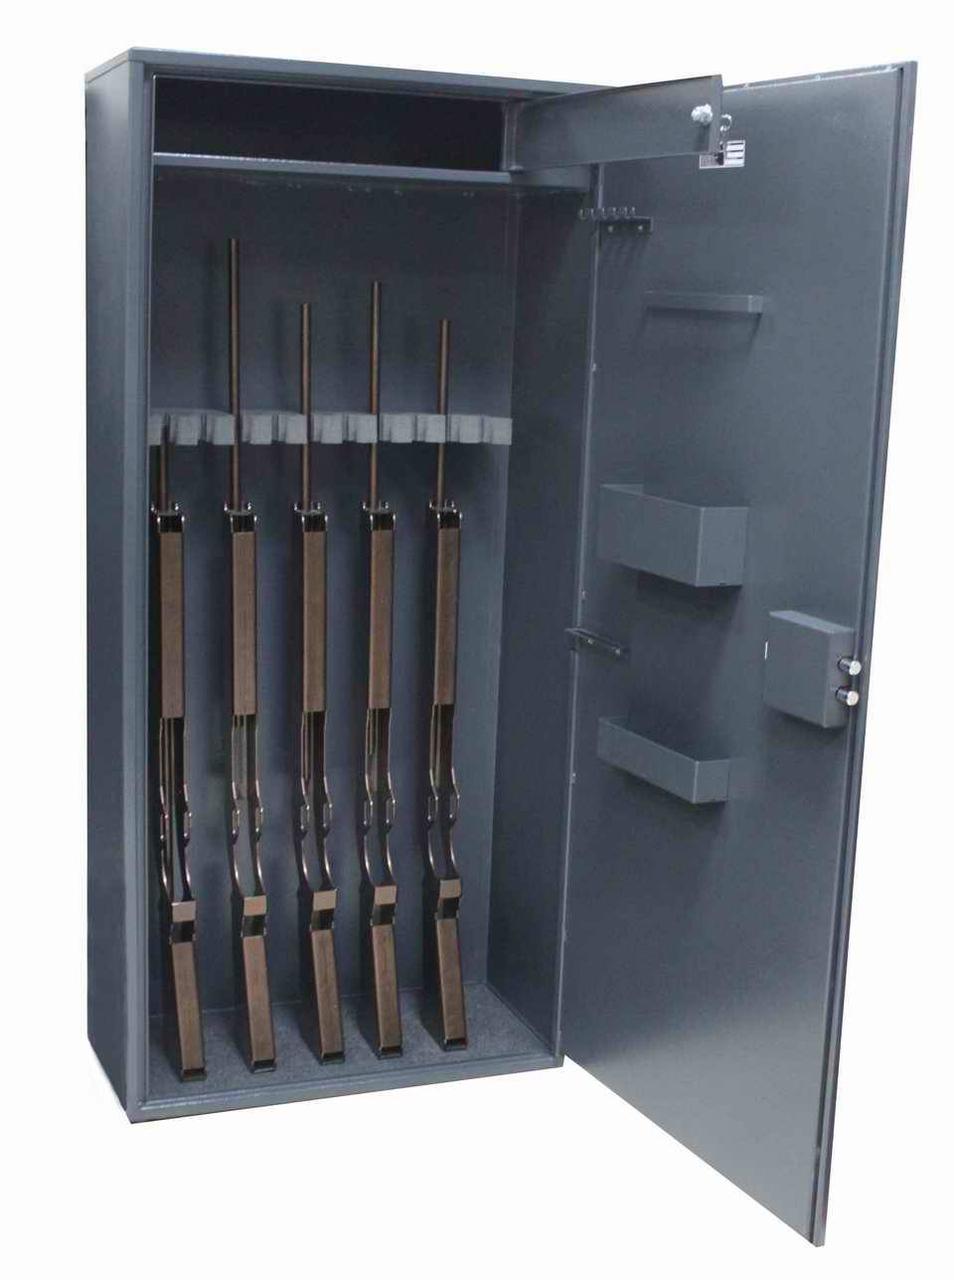 Самодельный сейф для ружья охотничьего: Оружейный сейф своими руками: чертежи и размеры шкафа для ружья и охотничьего оружия, как сделать и сварить самодельный ящик - фото, видео, схема